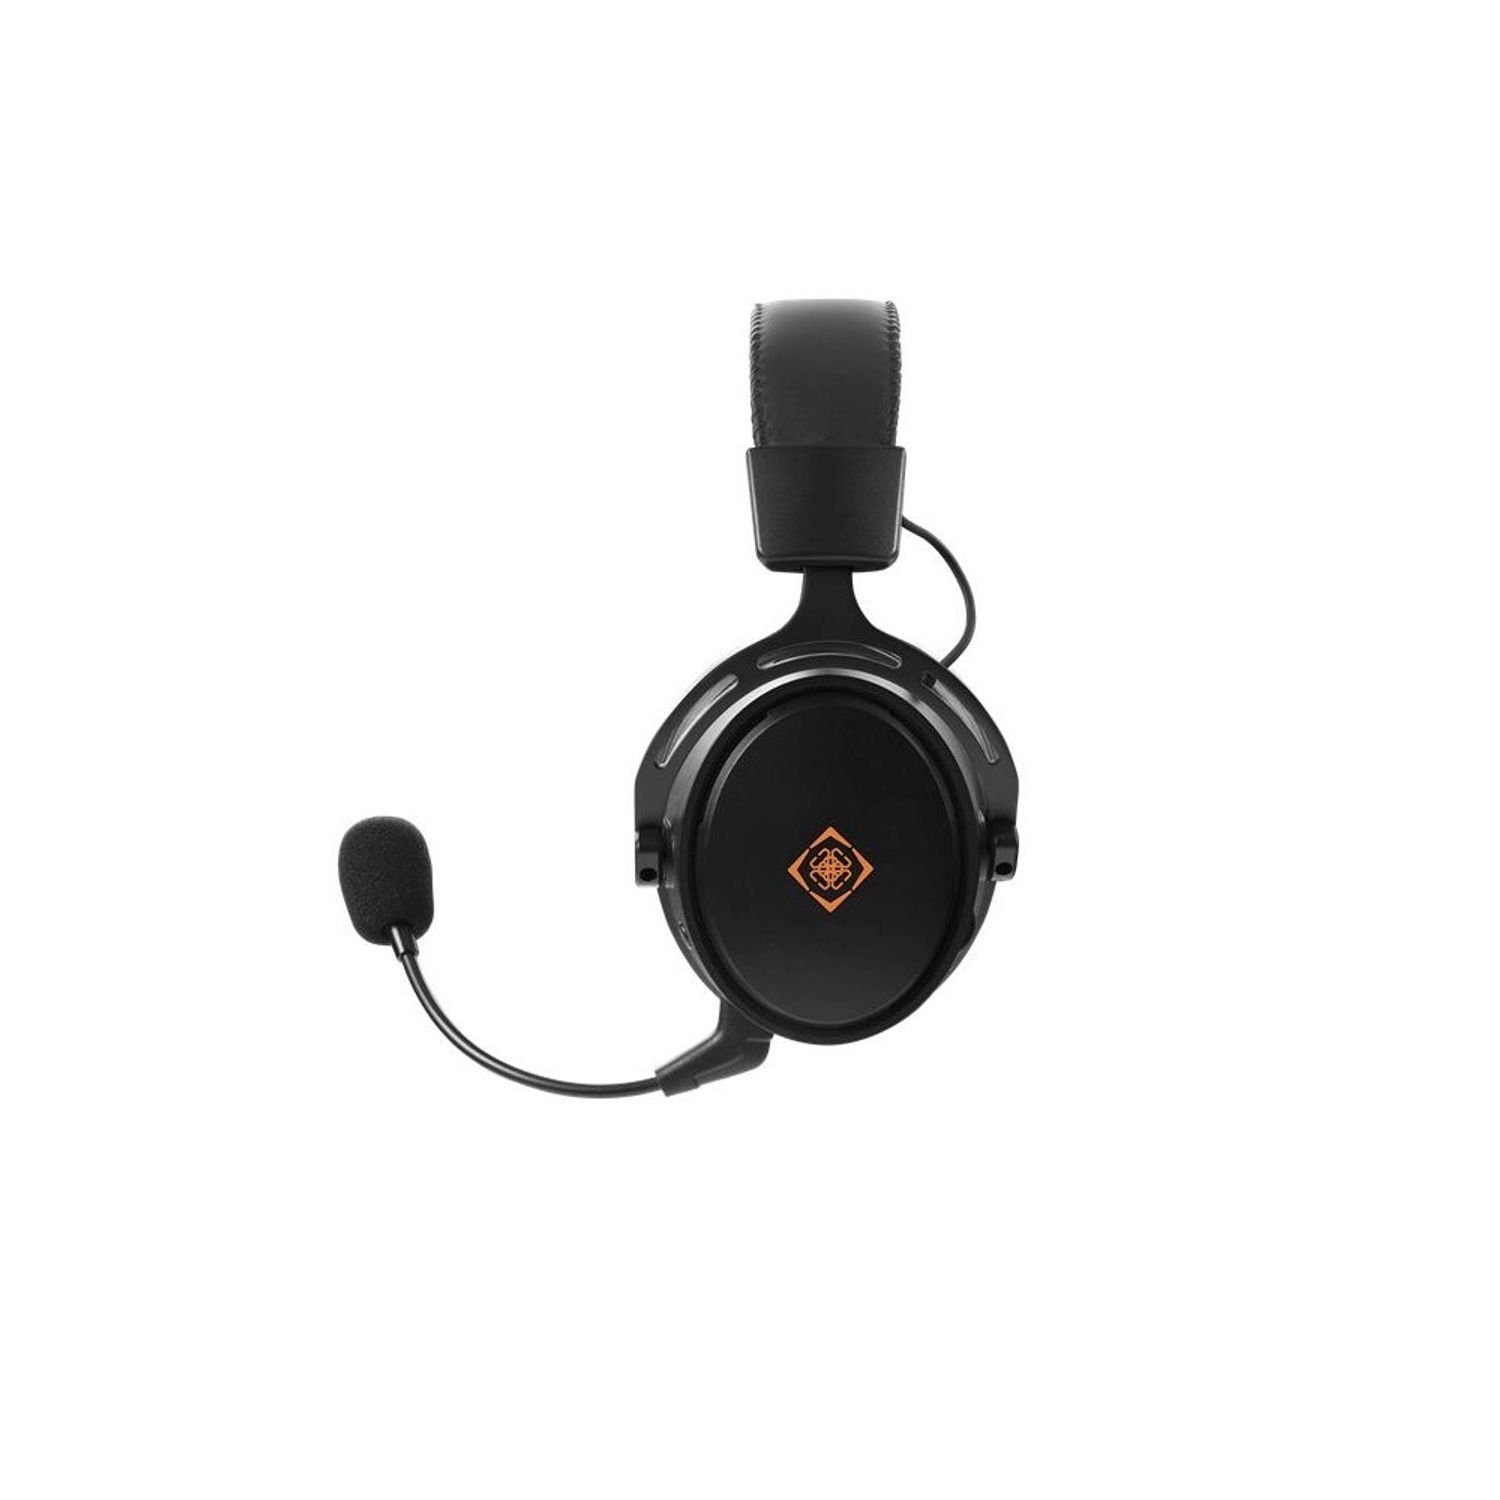 DELTACO DH410 Kabelloses Gaming Jahre Herstellergarantie) (inkl. Headset (verstellbar, 3,5-mm-Kabel) Headset schwarz 5 Kopfhörer